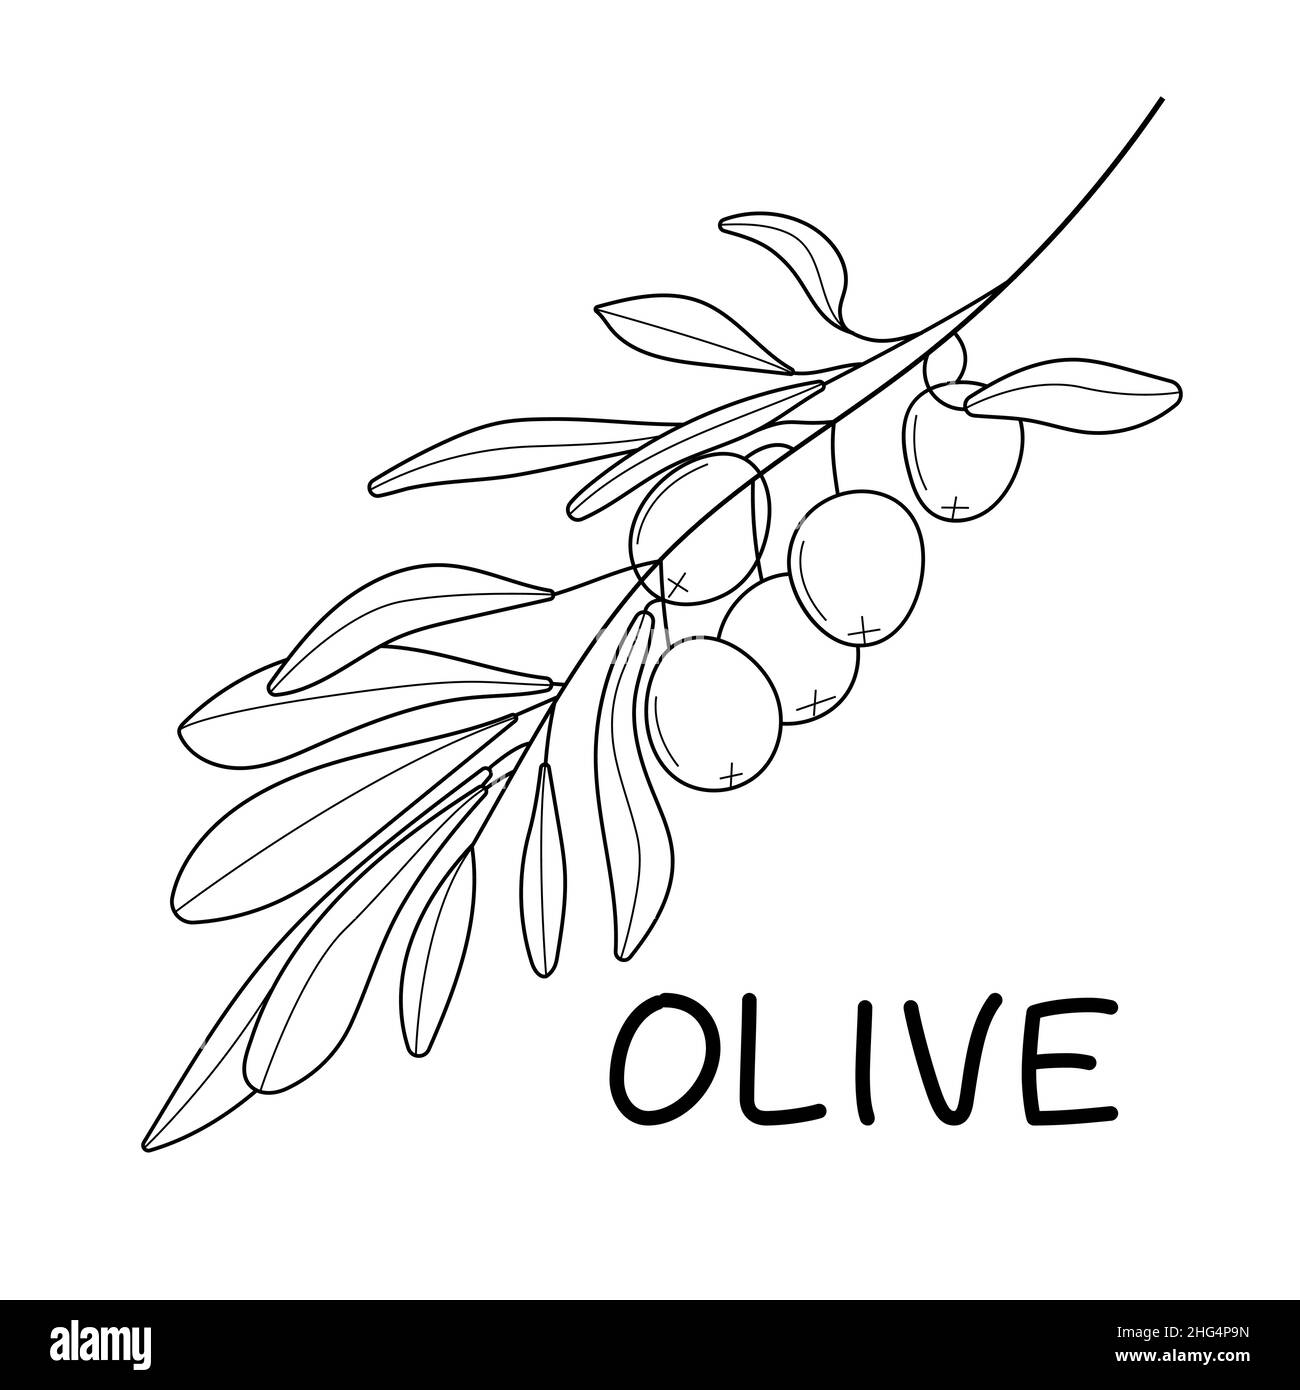 Vettore di ramo di olive in doodle, stile di schizzo. Branca e foglia botanica a linea singola nera e minimale. Inchiostro, matita albero di ulivo disegnato a mano, foglie per l'involucro Illustrazione Vettoriale